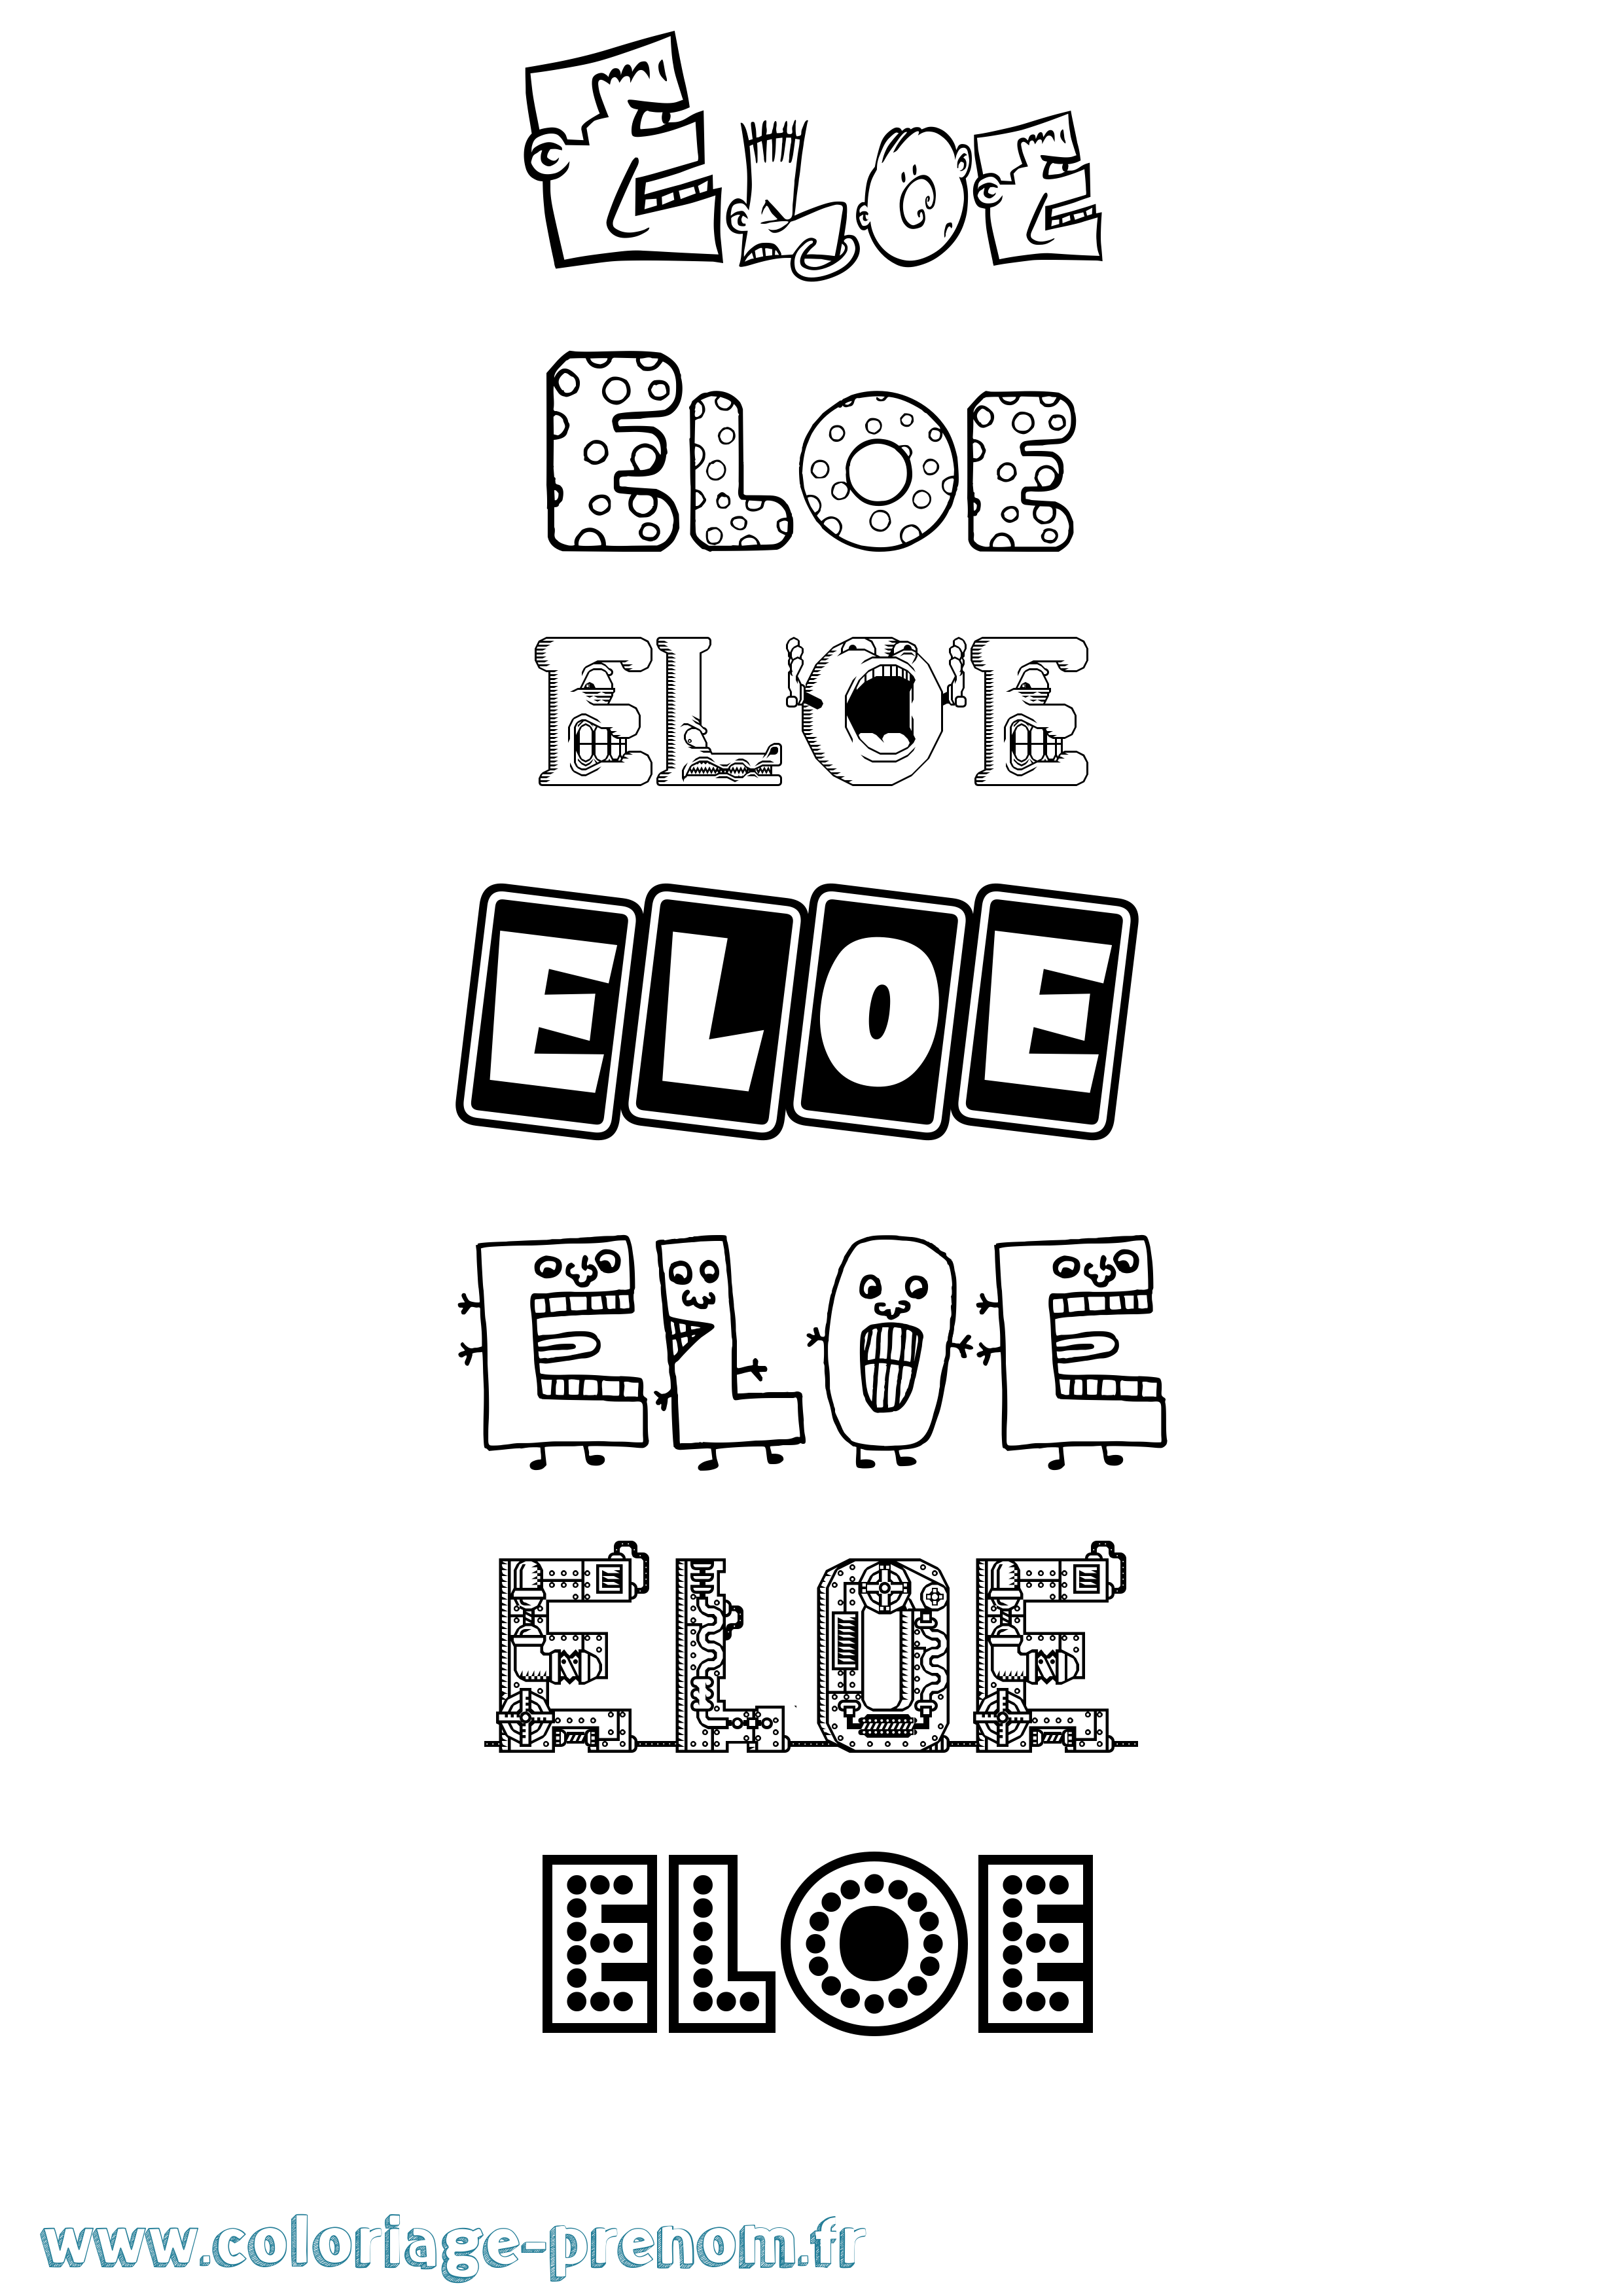 Coloriage prénom Eloe Fun